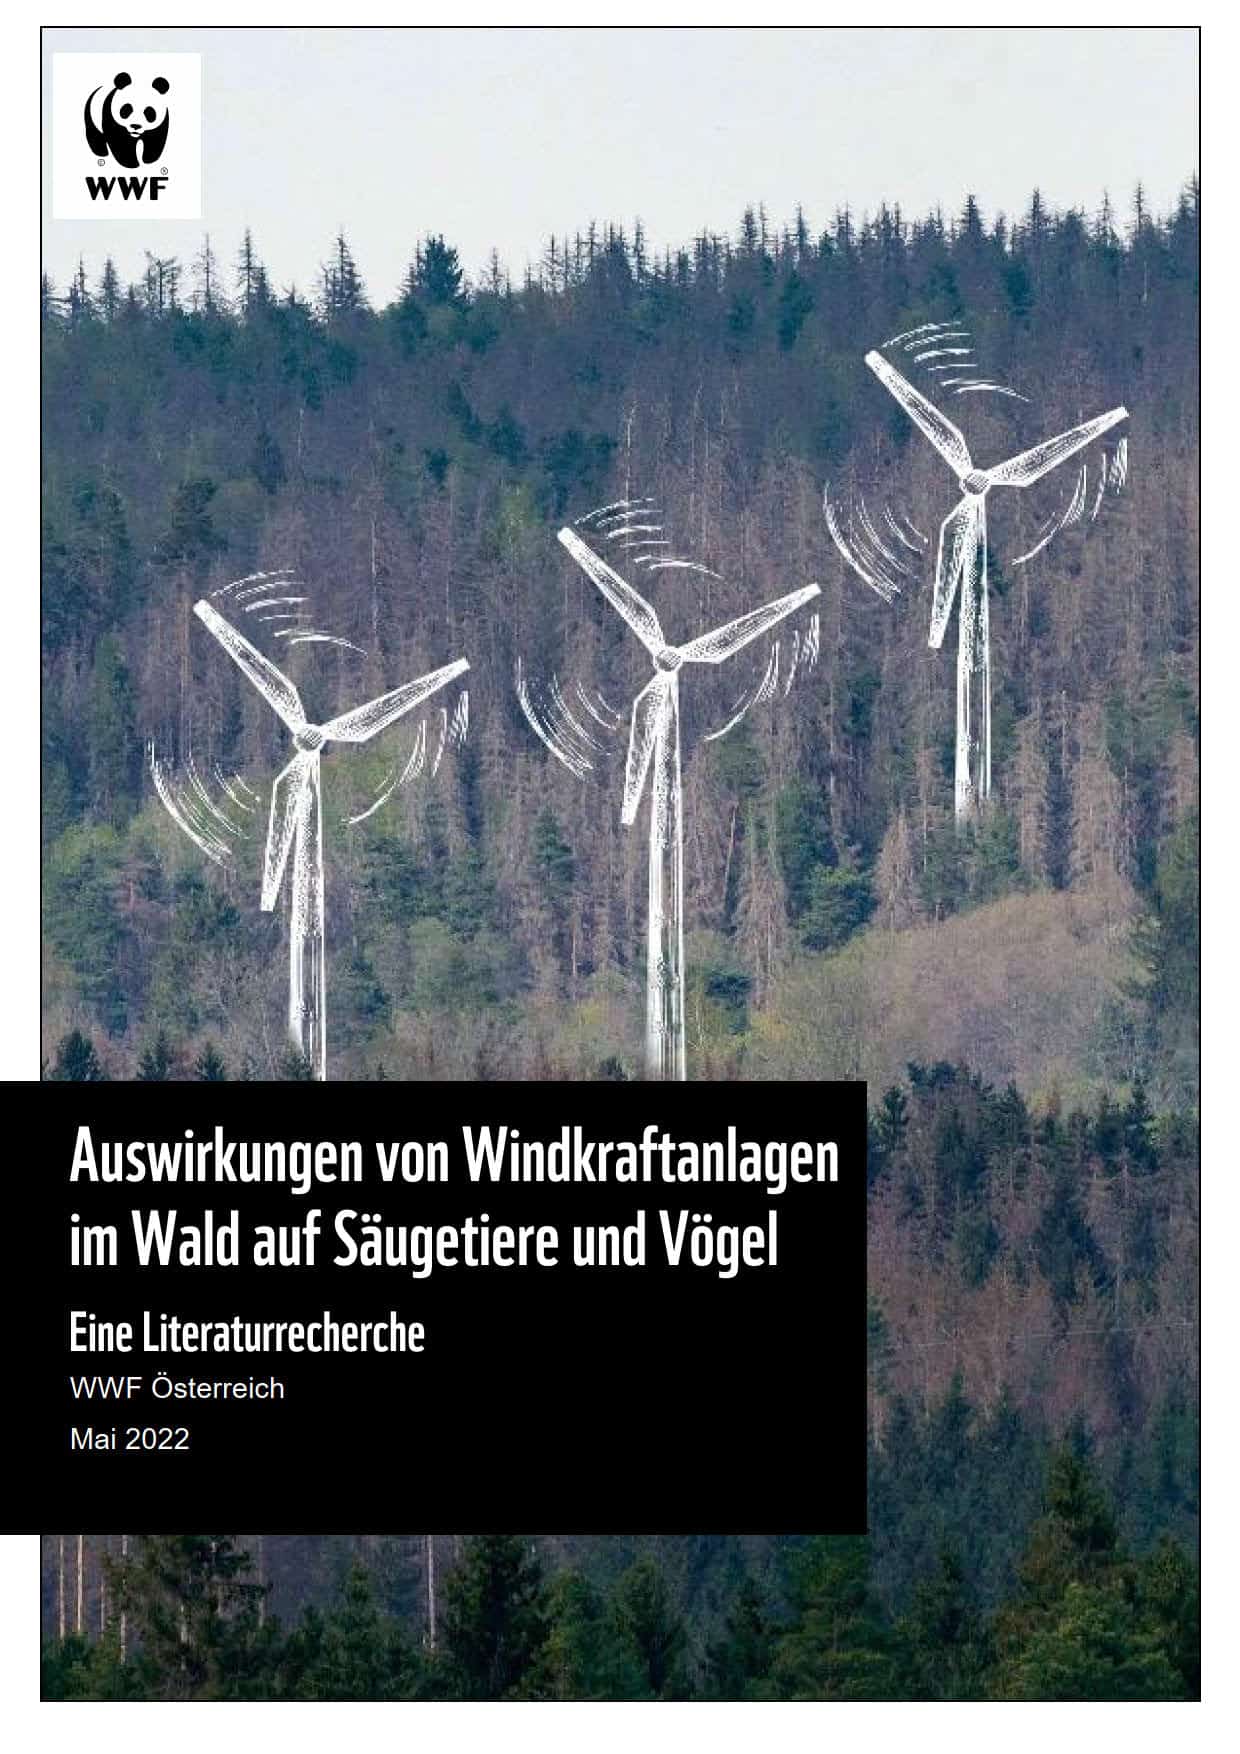 WWF Studie - Windkraftanlagen im Wald